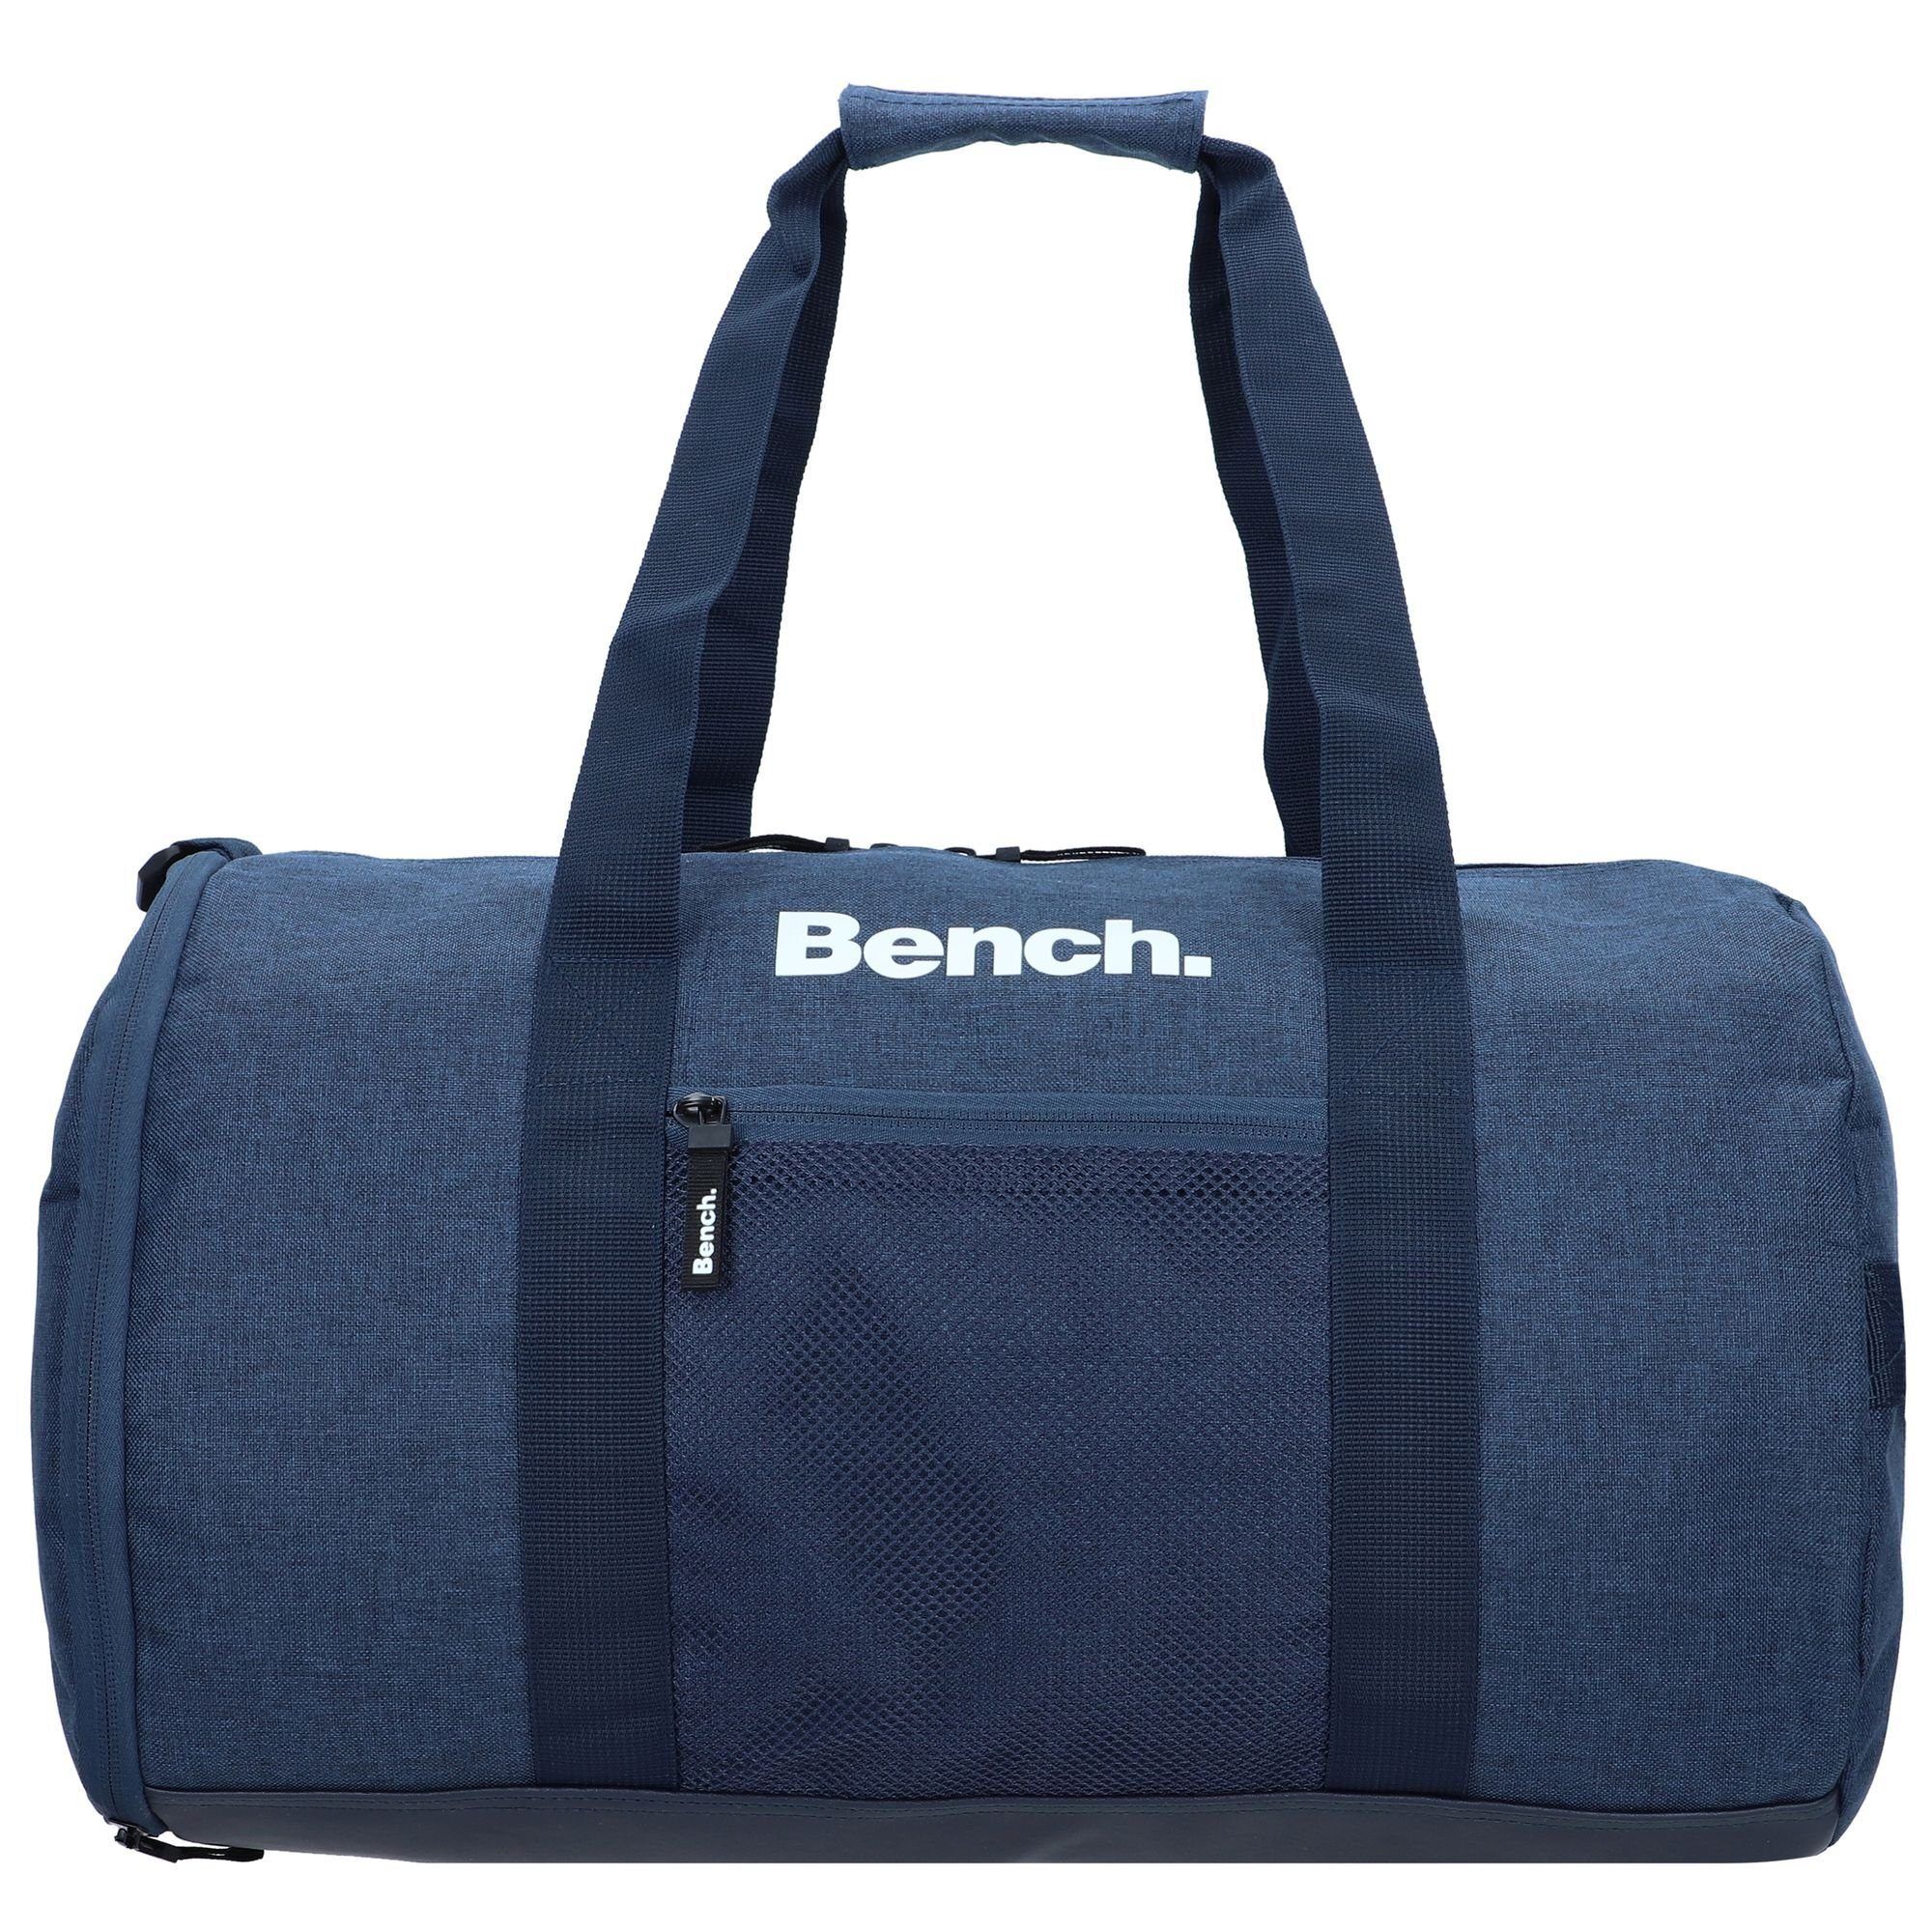 Bench. Weekender Classic, Polyester dunkelblau-weiß